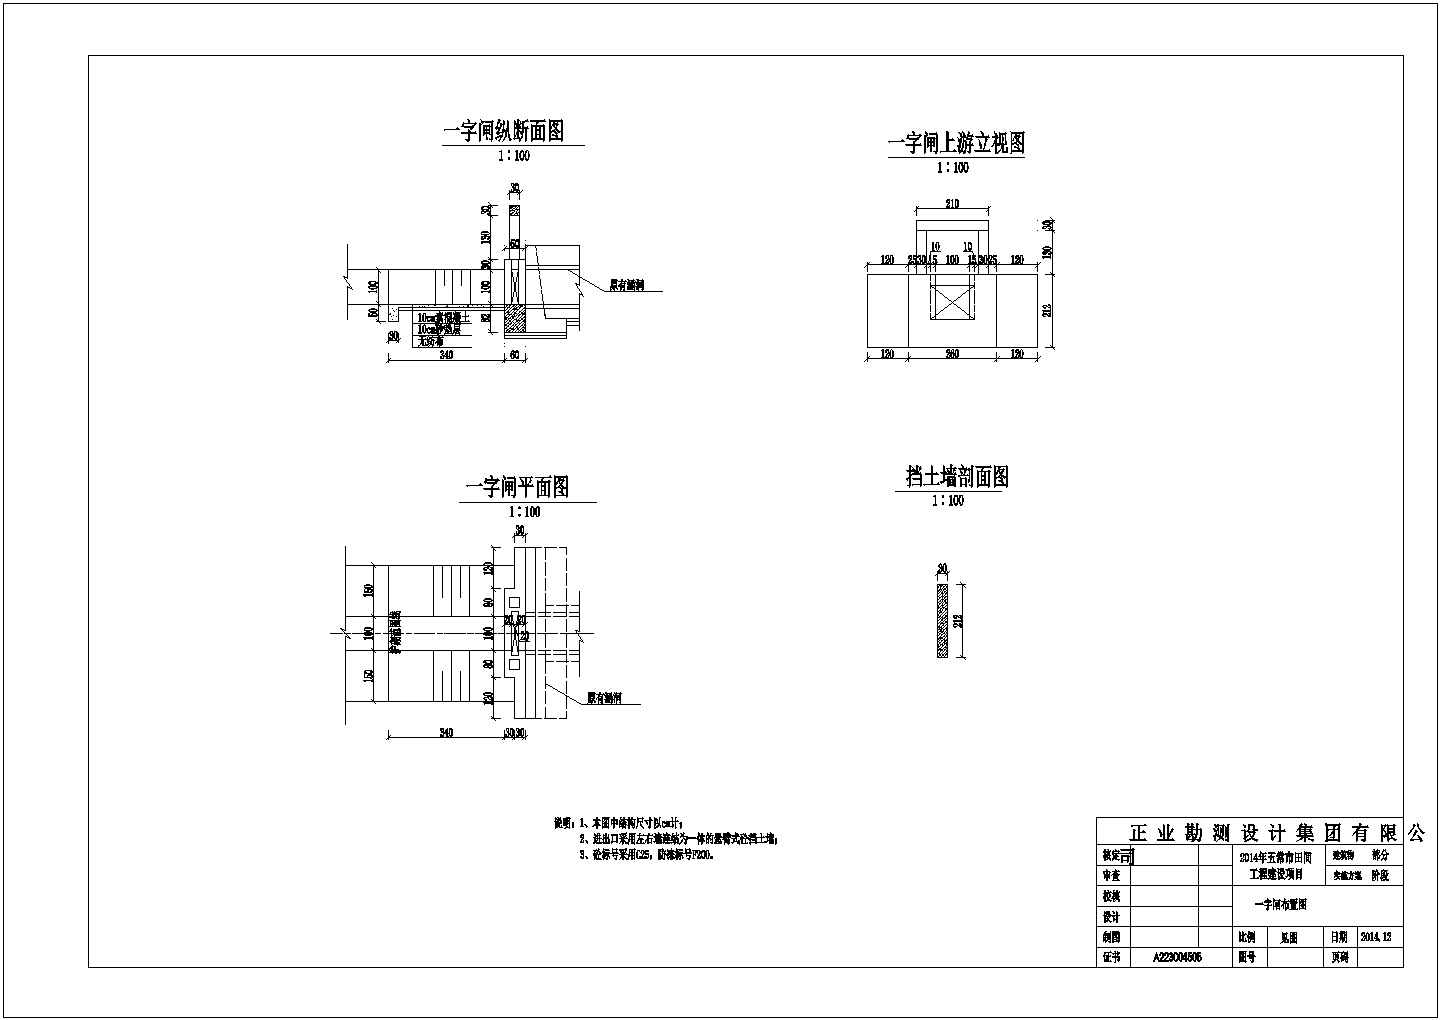 【五常】2014年田间工程建设项目图纸